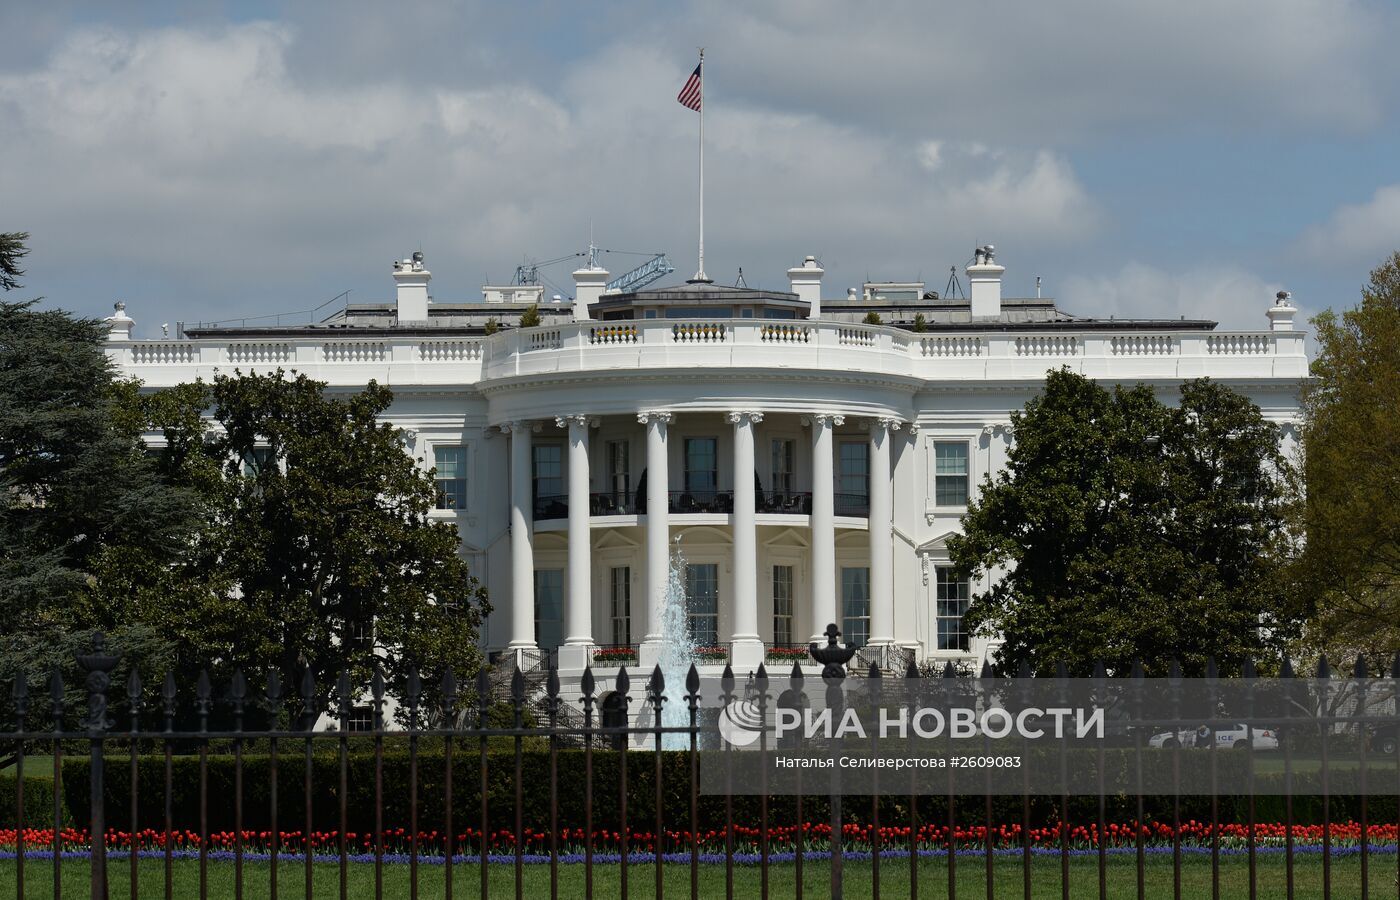 البيت الأبيض يتهم الكونغرس بالتقاعس بعد انسحاب قوات كييف من أفدييفكا